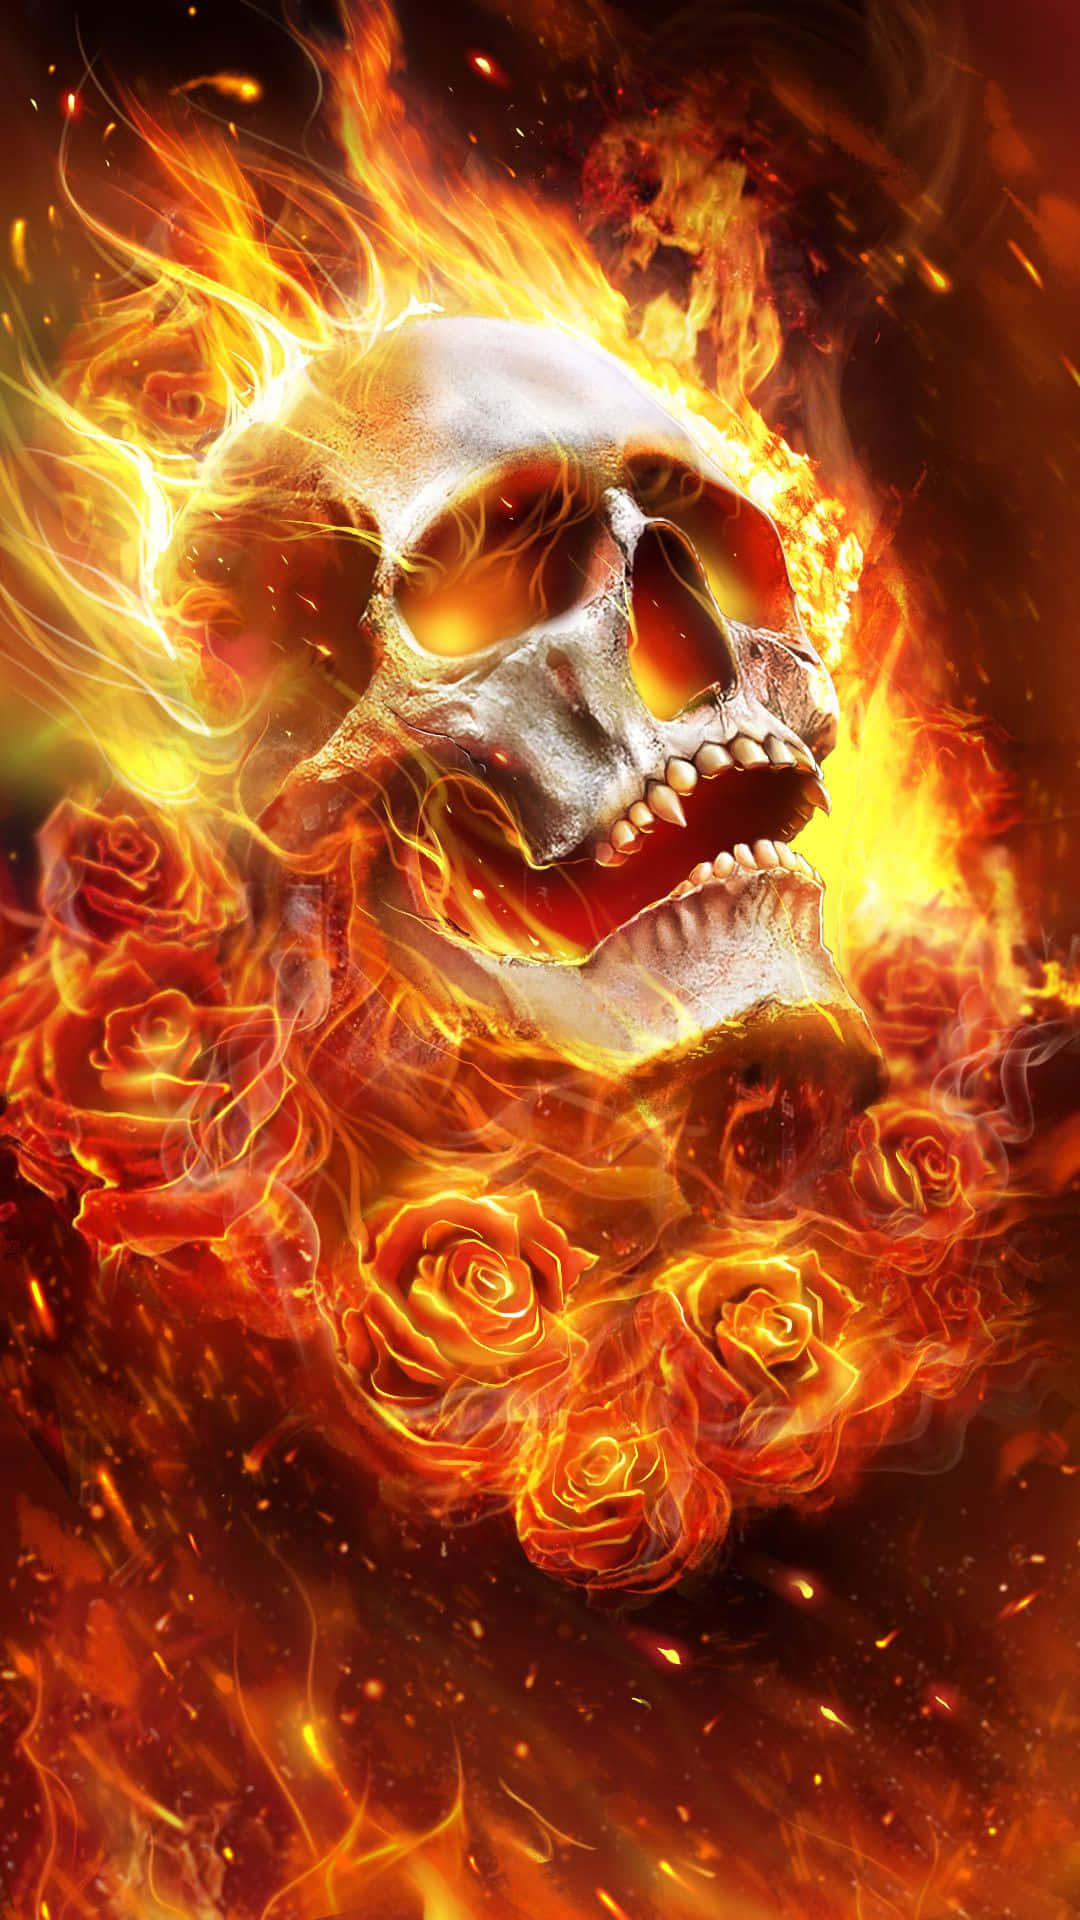 Einschädel Mit Rosen In Flammen Wallpaper